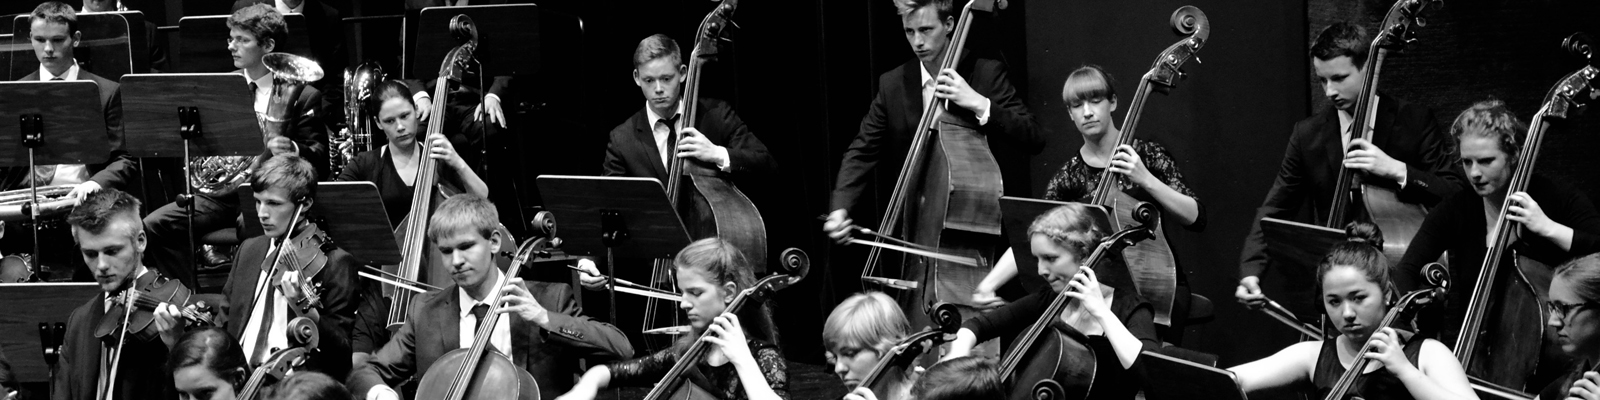 Schwarz-Weiß Bild eines Orchesters